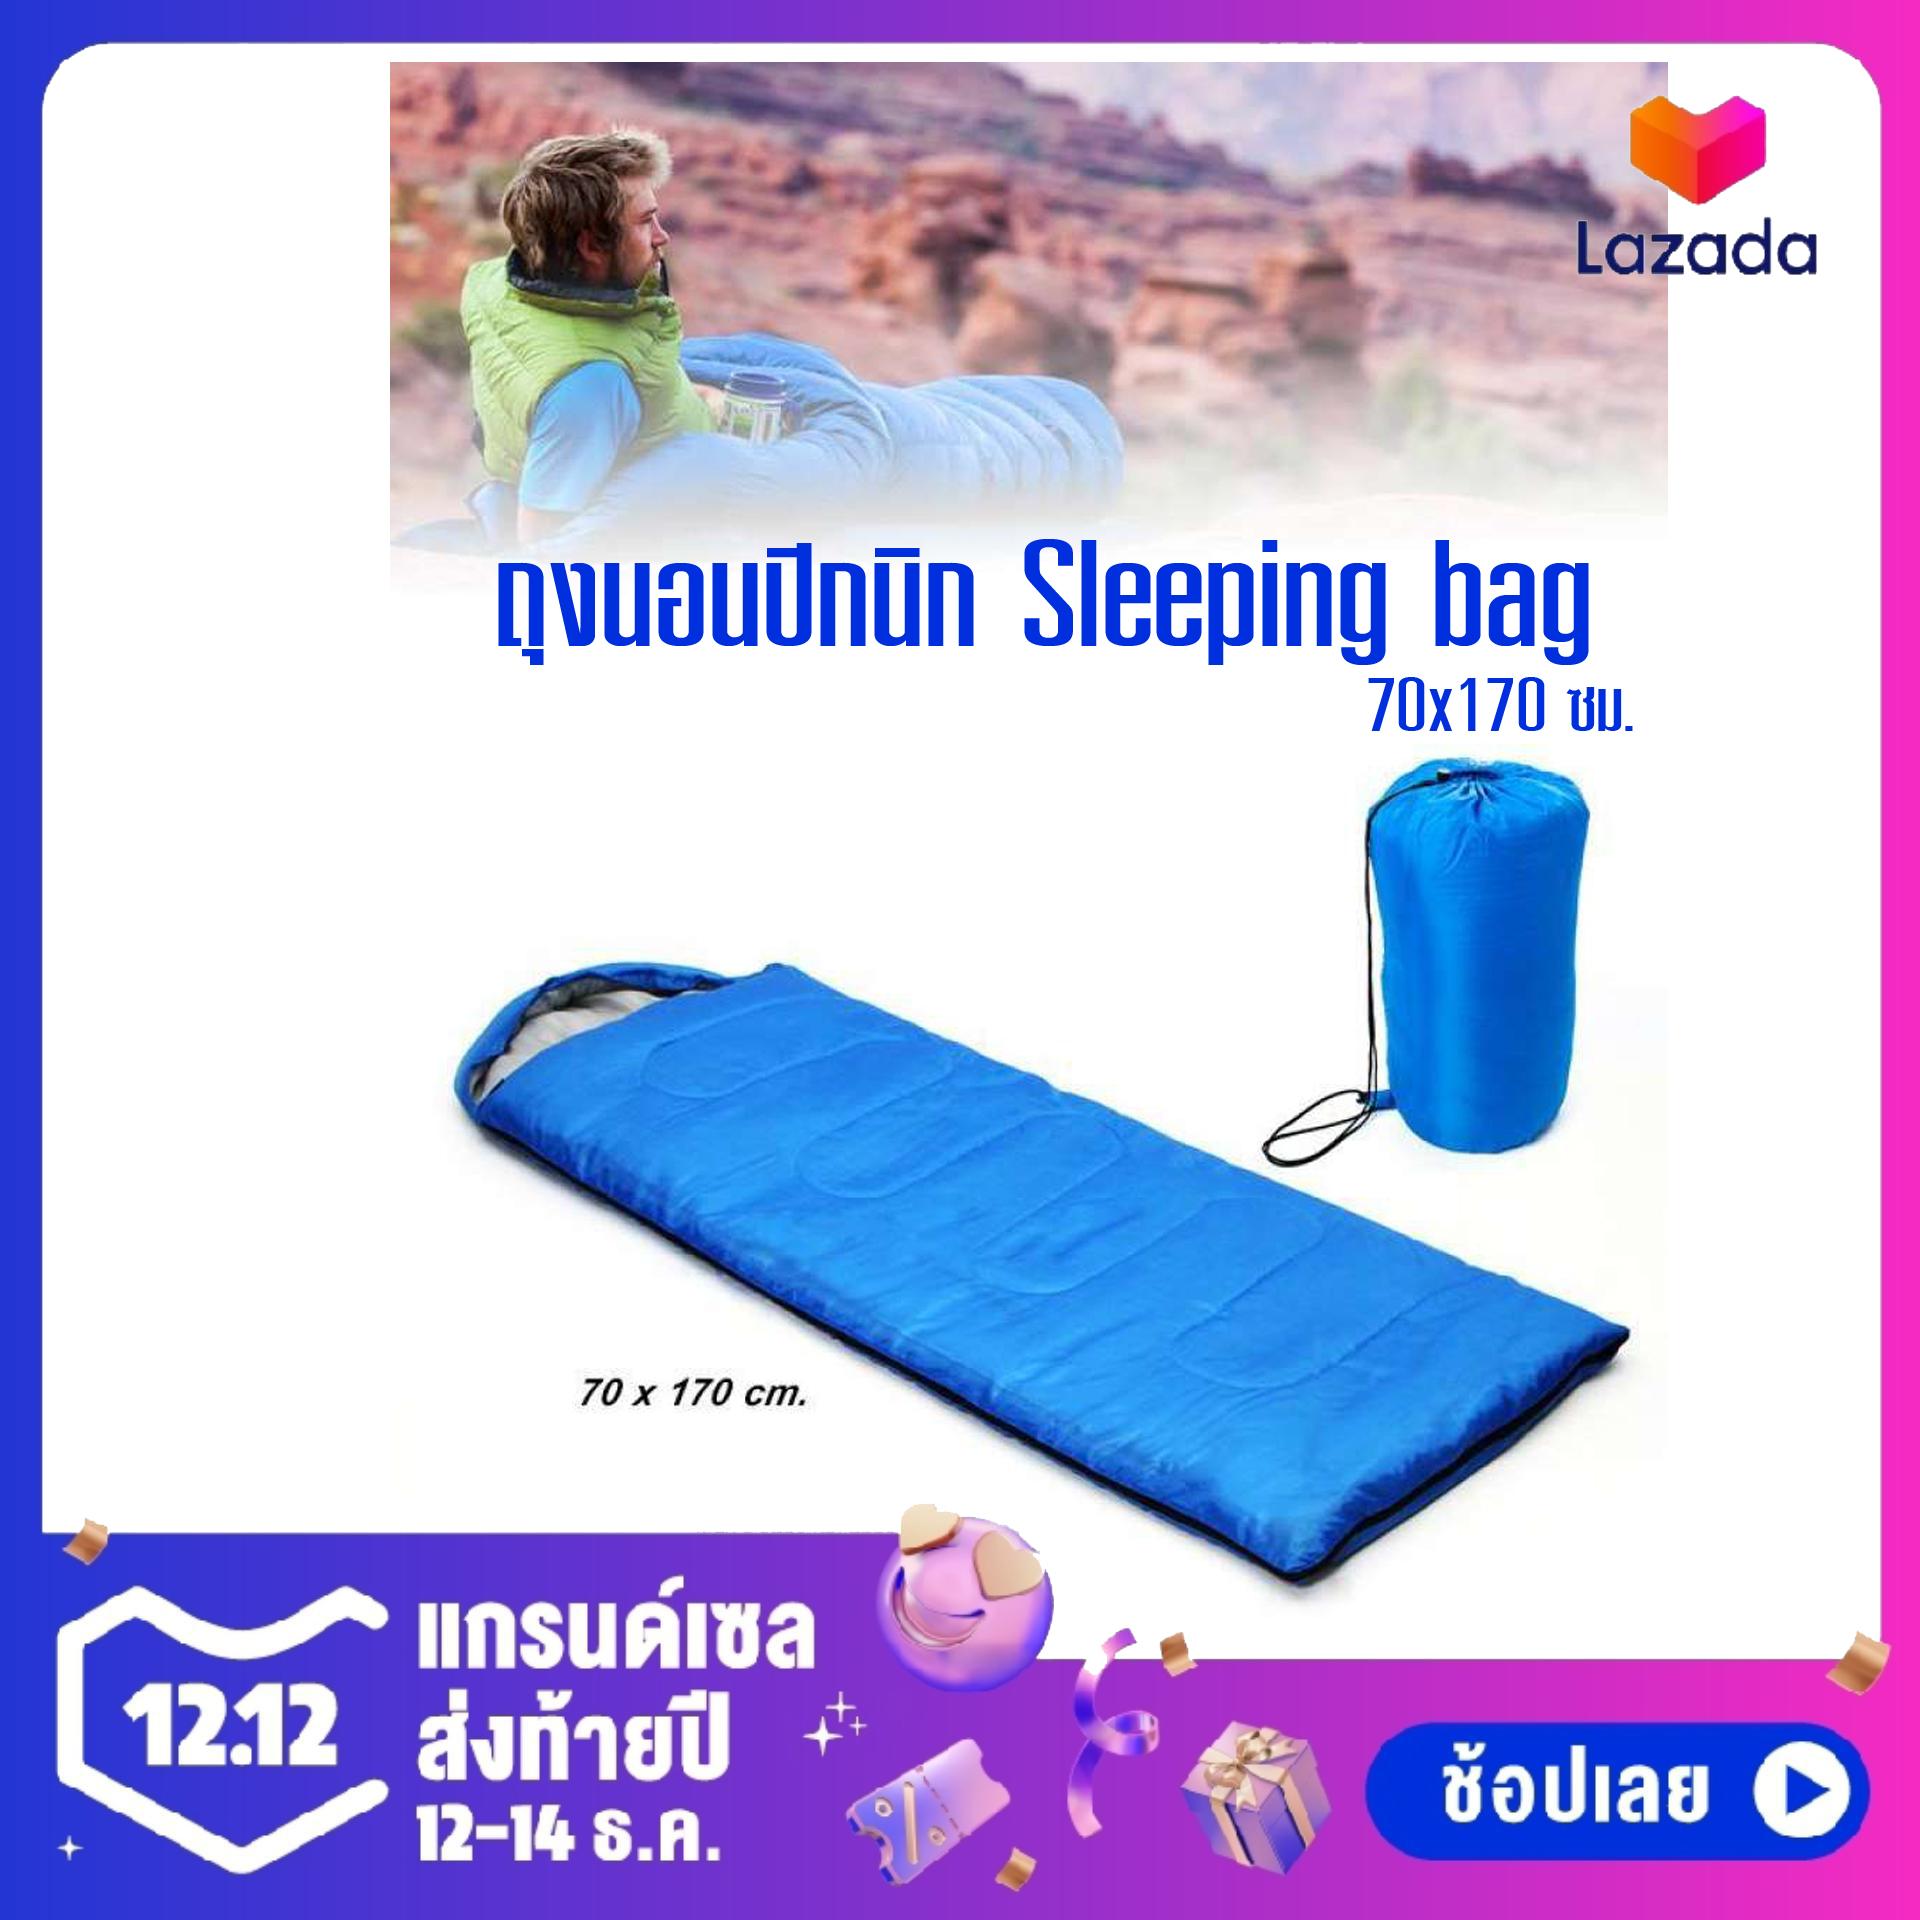 ถุงนอน แบบพกพา ถุงนอนปิกนิก Sleeping bag ขนาดกระทัดรัด น้ำหนักเบา พกพาไปได้ทุกที่ จำนวน 1 อัน (สีฟ้า)